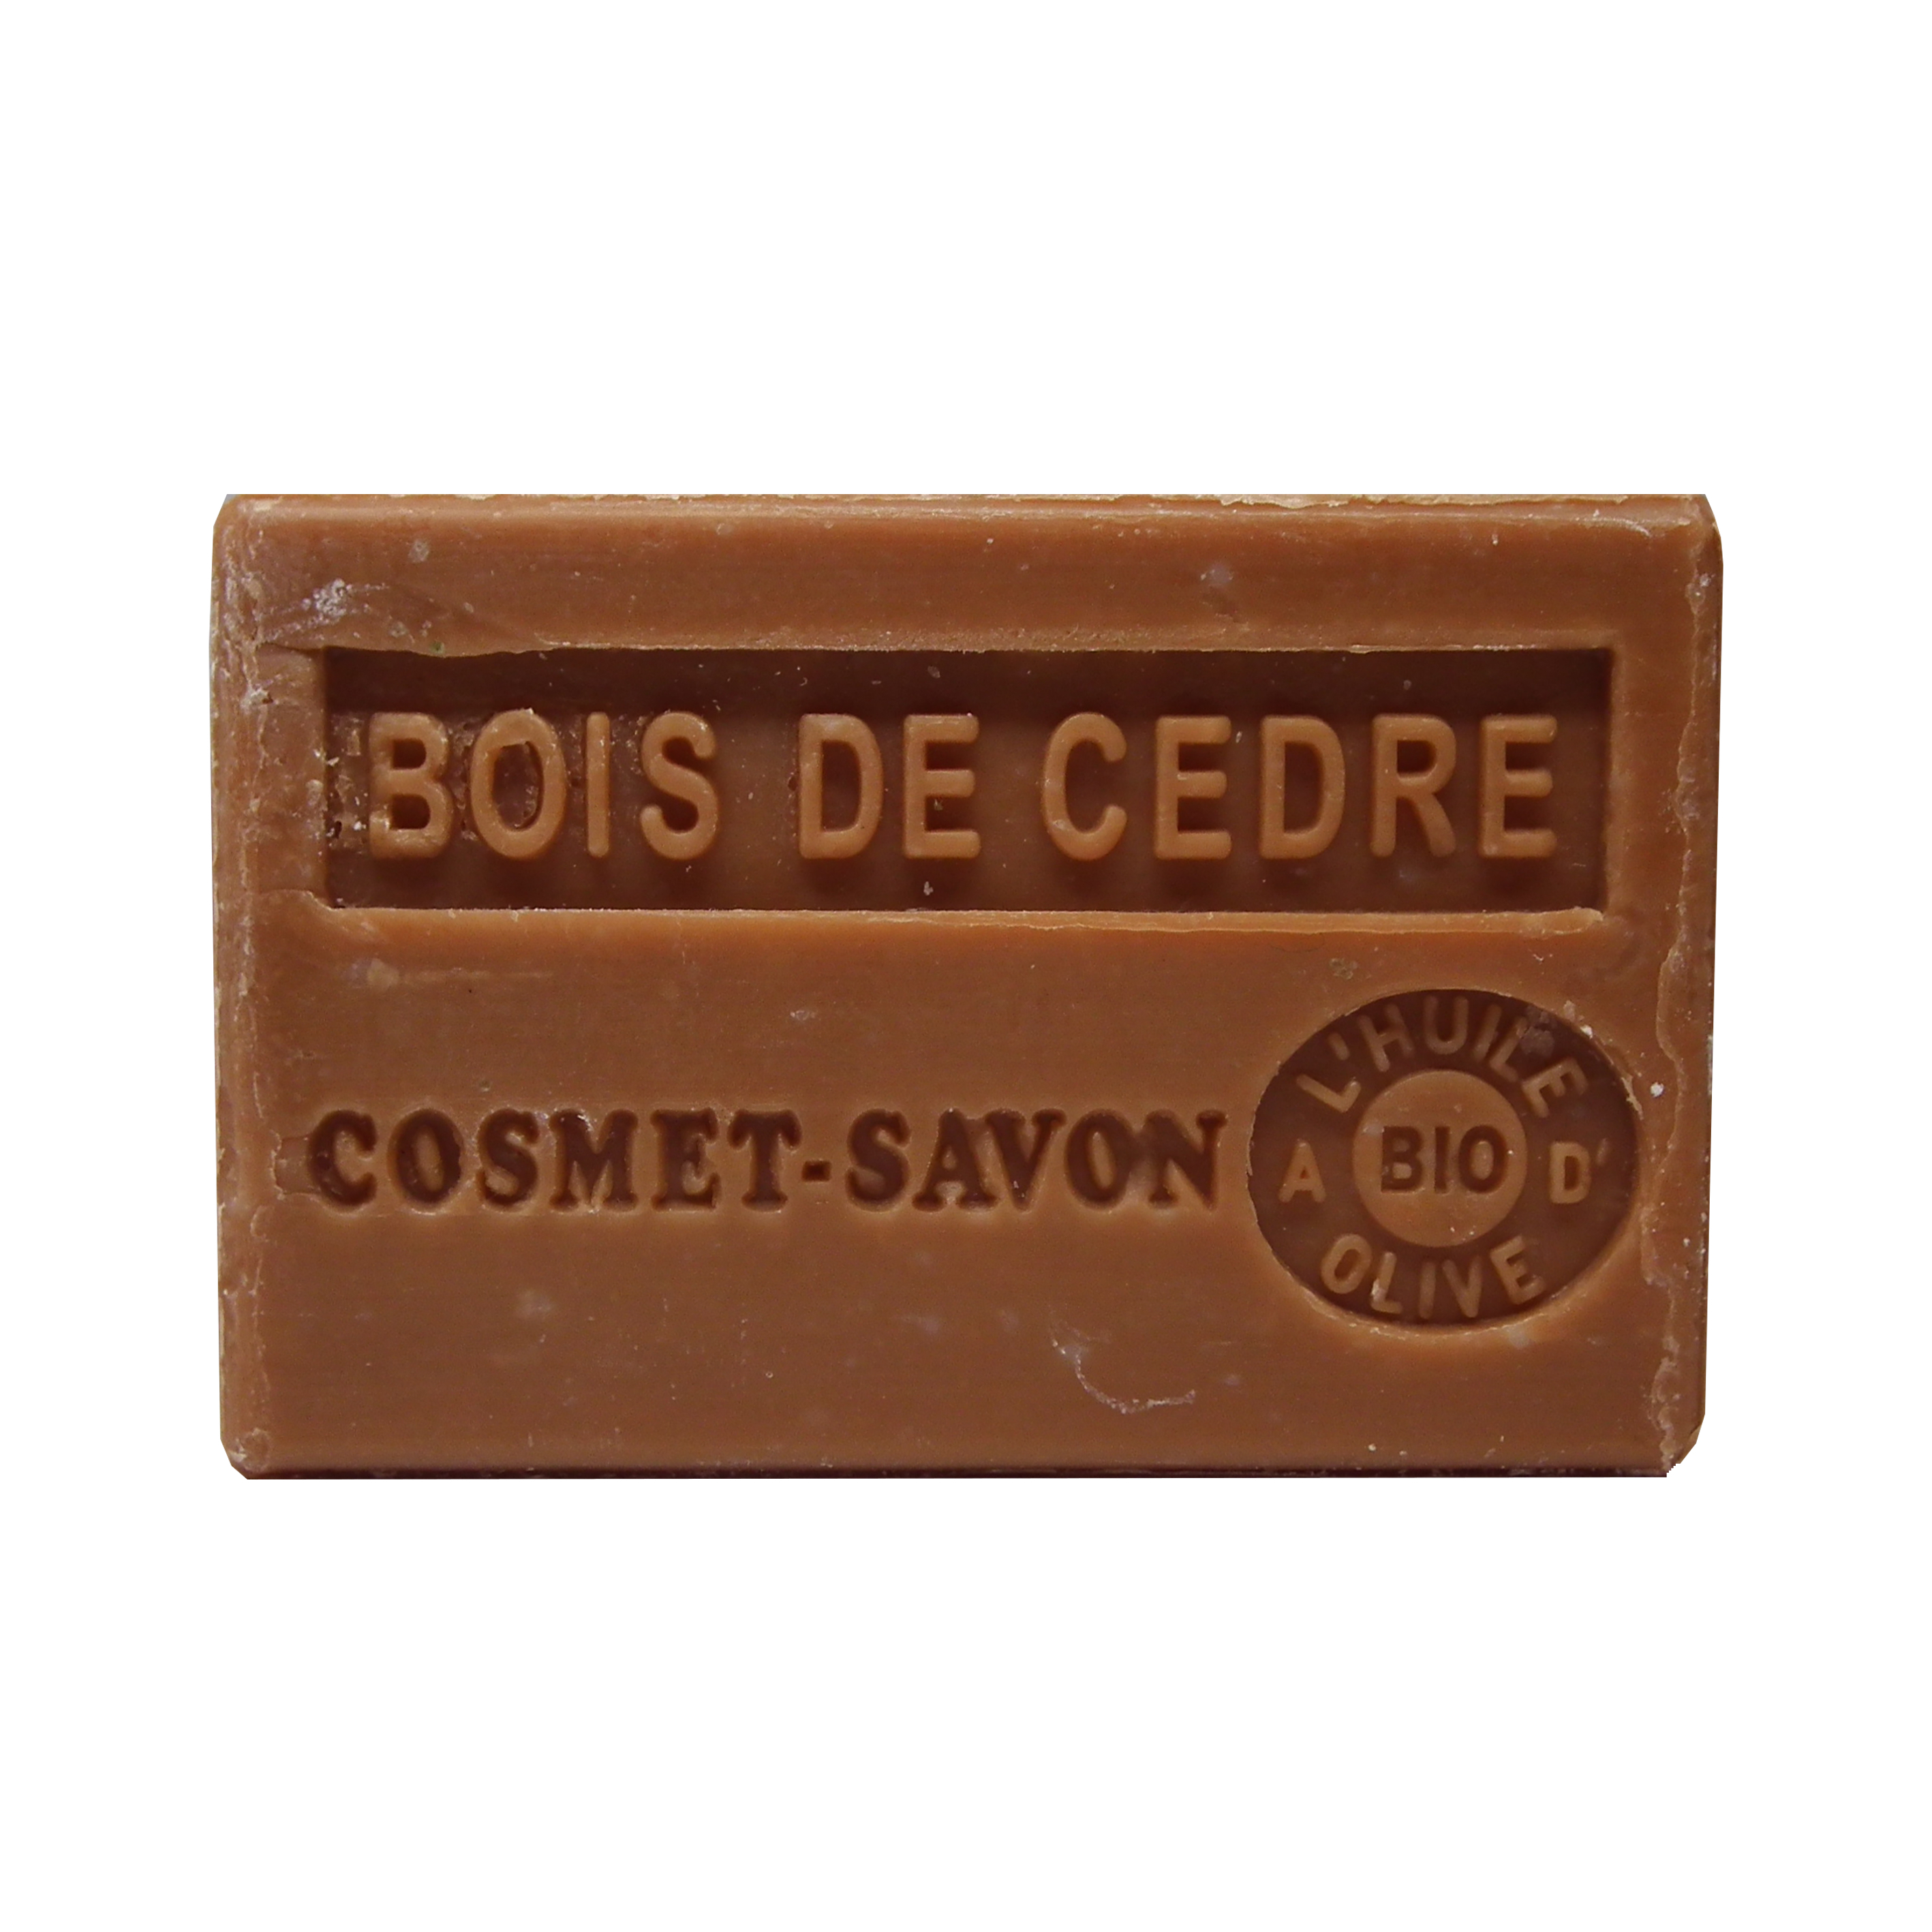 bois-de-cedre-savon-125gr-au-beurre-de-karite-bio-cosmet-savon-3665205006133-face-JPEG